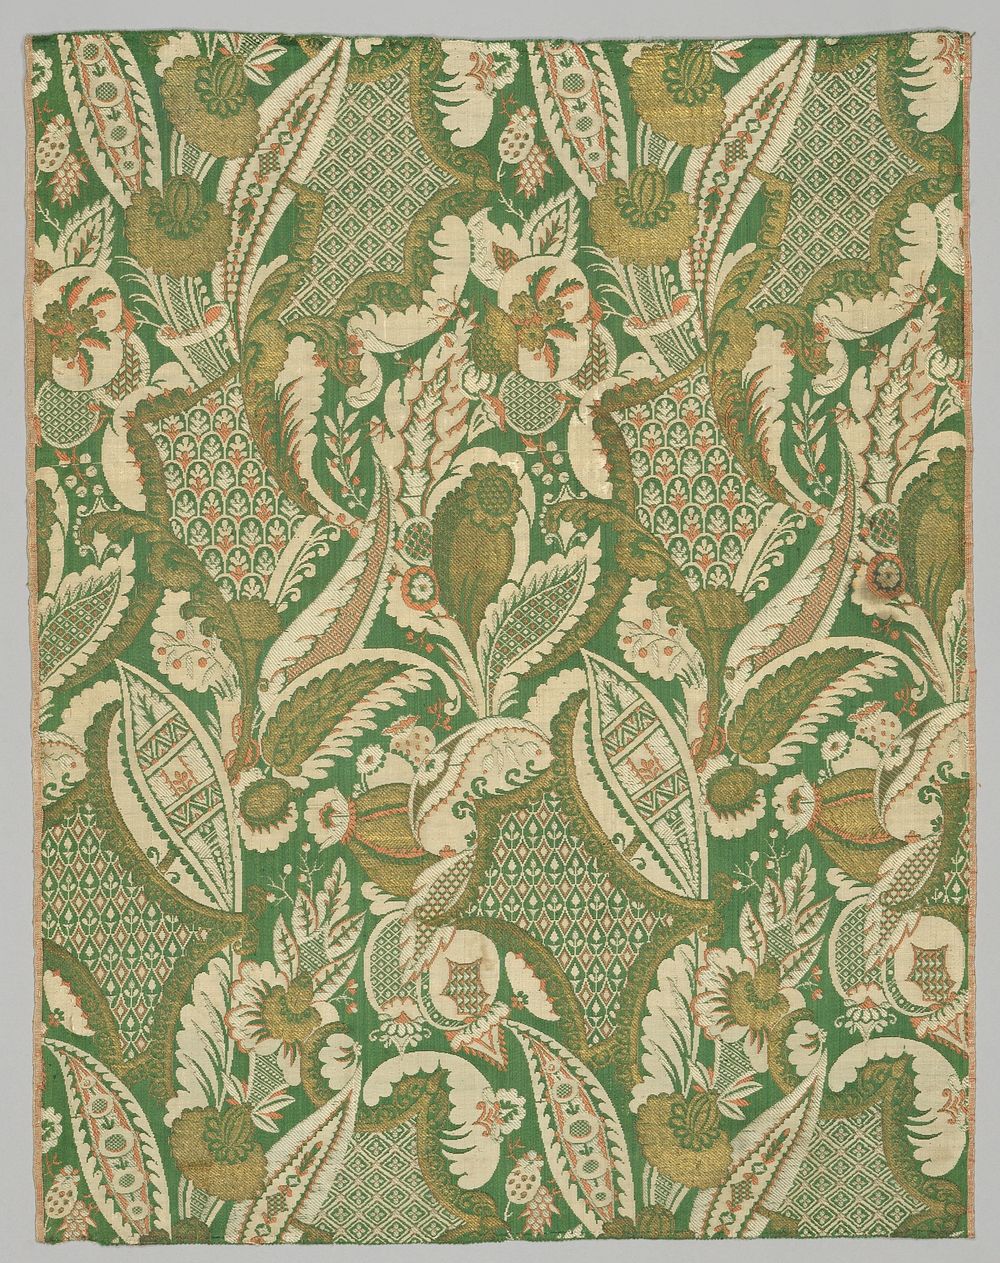 Baan zijdeweefsel met bizar patroon (c. 1710 - c. 1720) by anonymous